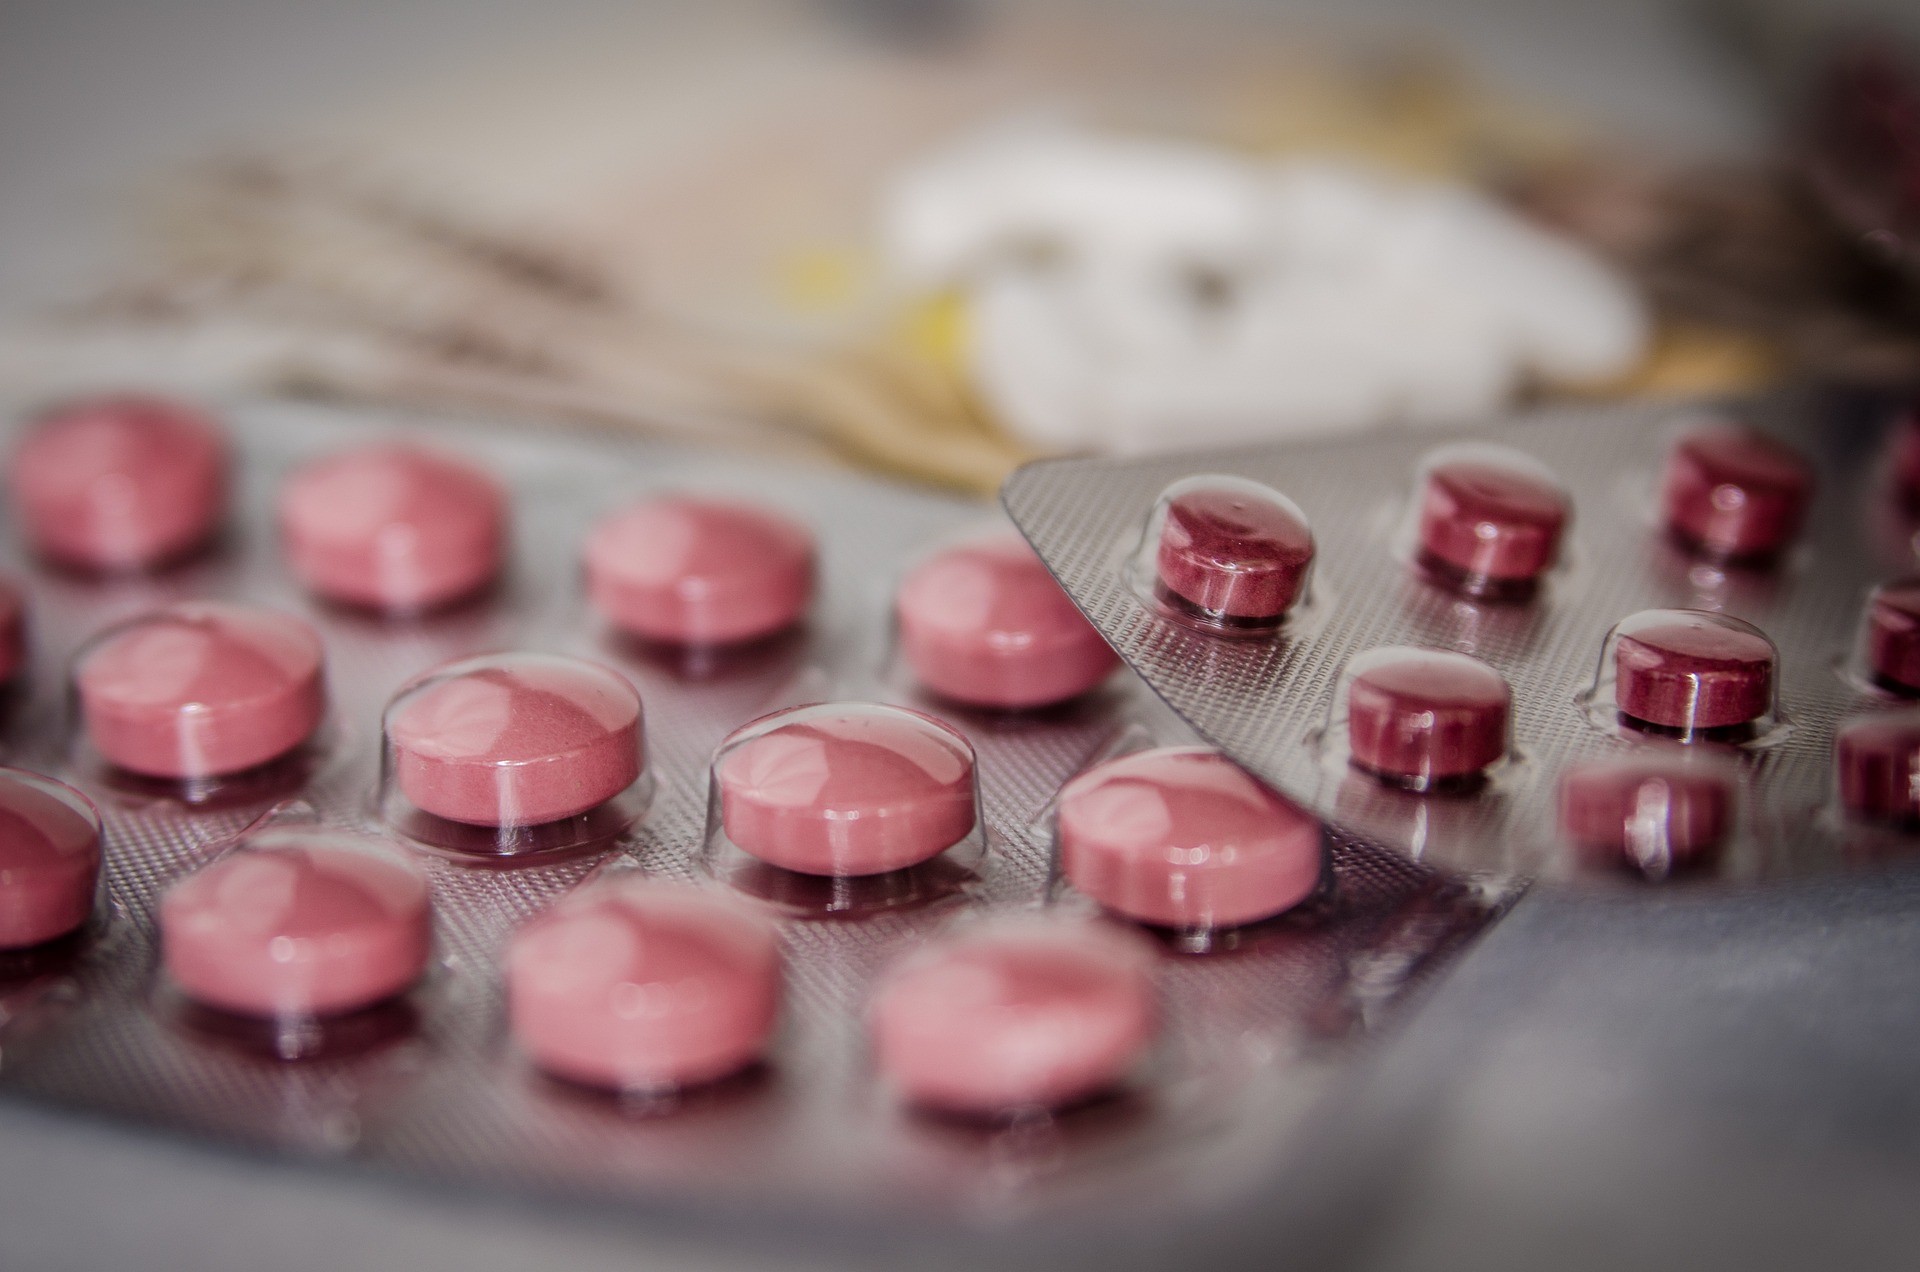 W Złocieńcu odmówiono sprzedaży leków antykoncepcyjnych. Sieć aptek komentuje sprawę